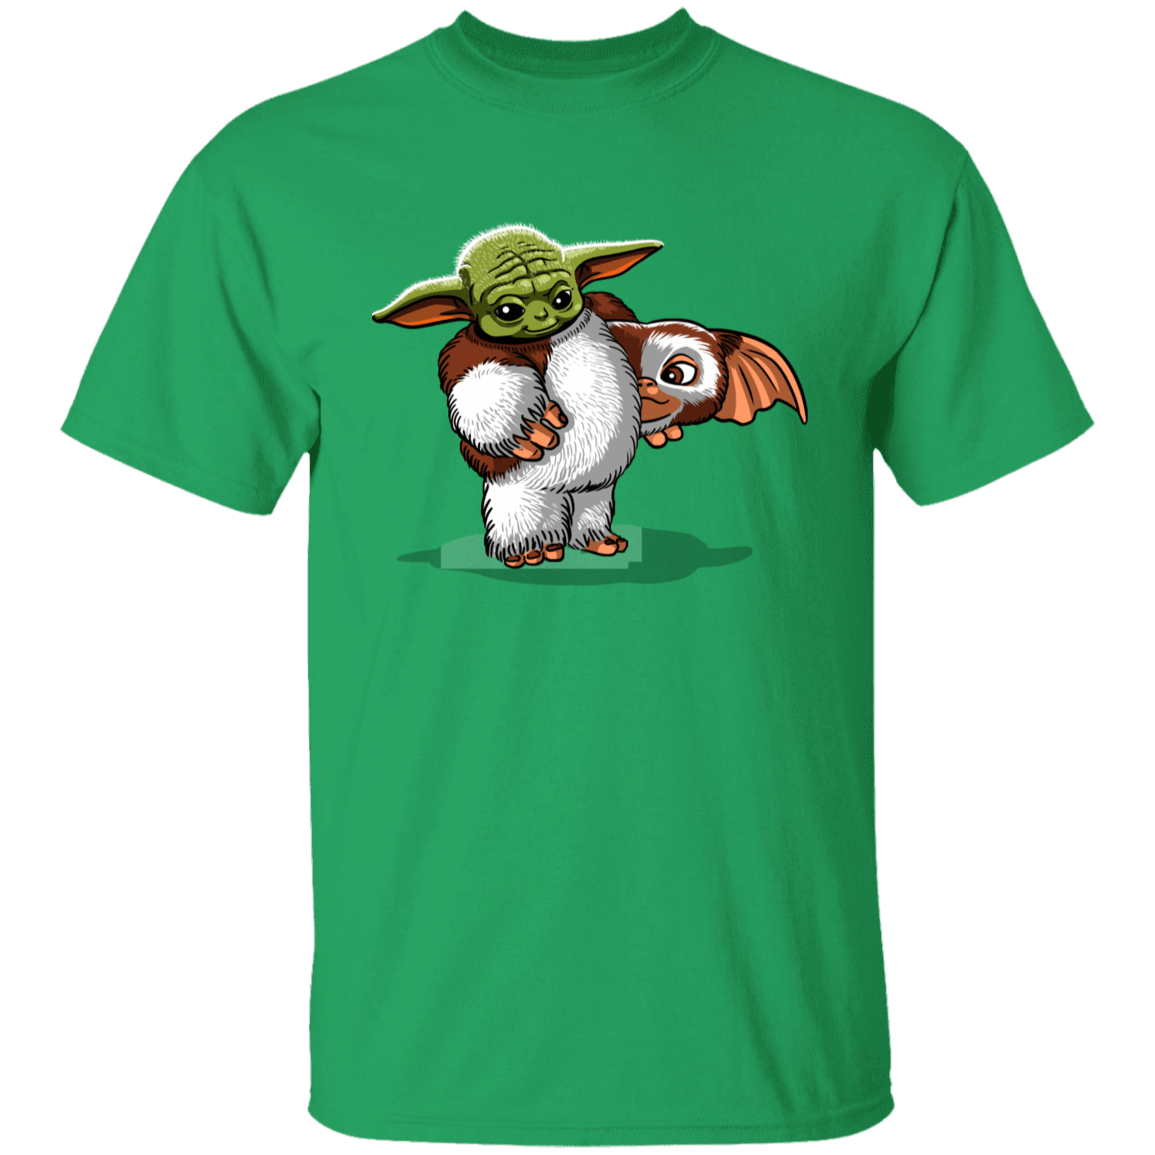 T-Shirts Irish Green / YXS Baby in Disguise Youth T-Shirt